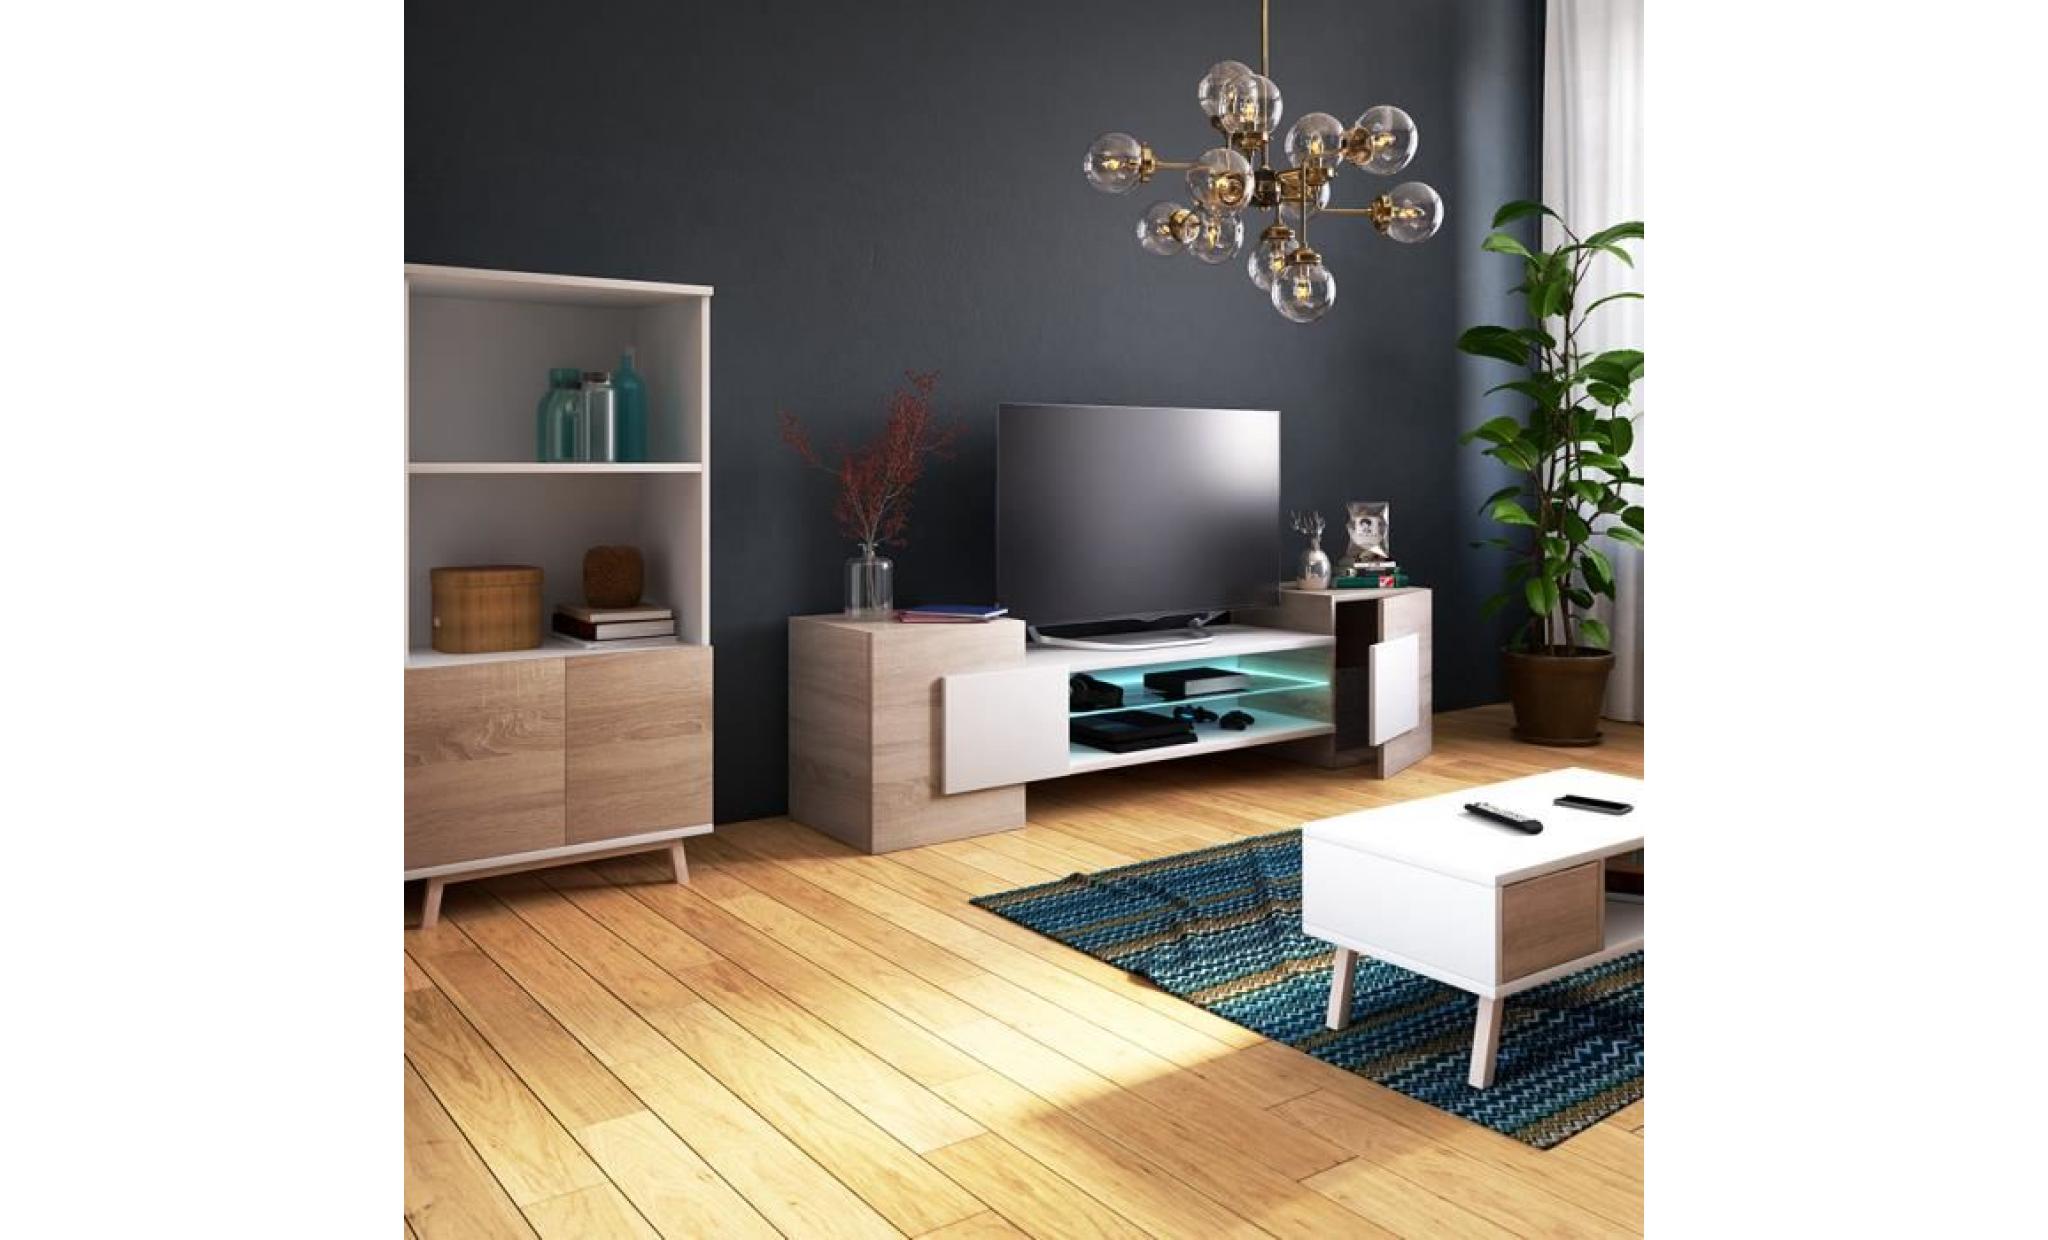 meuble tv / meuble de salon   charles   160 cm   effet chêne / blanc   sans led   style contemporain   design moderne pas cher